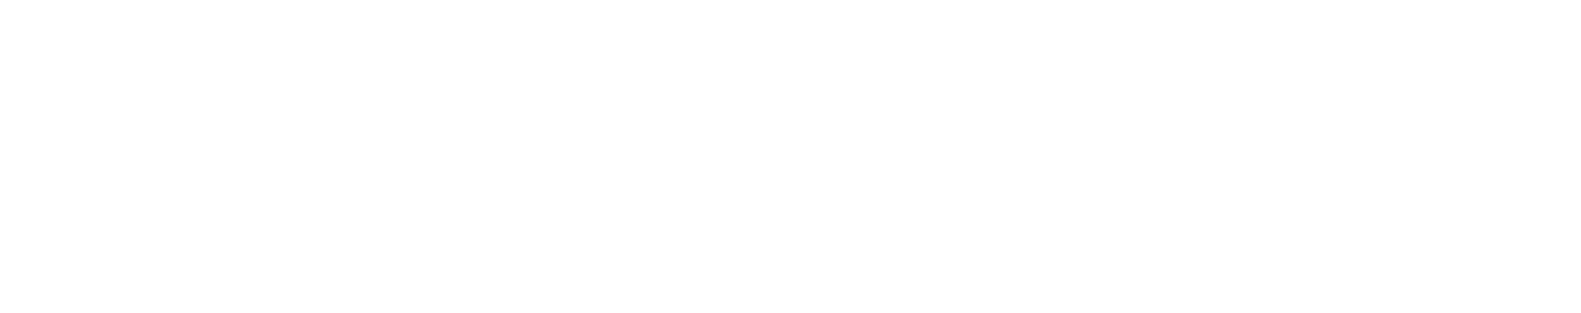 Ceragon Networks logo large for dark backgrounds (transparent PNG)